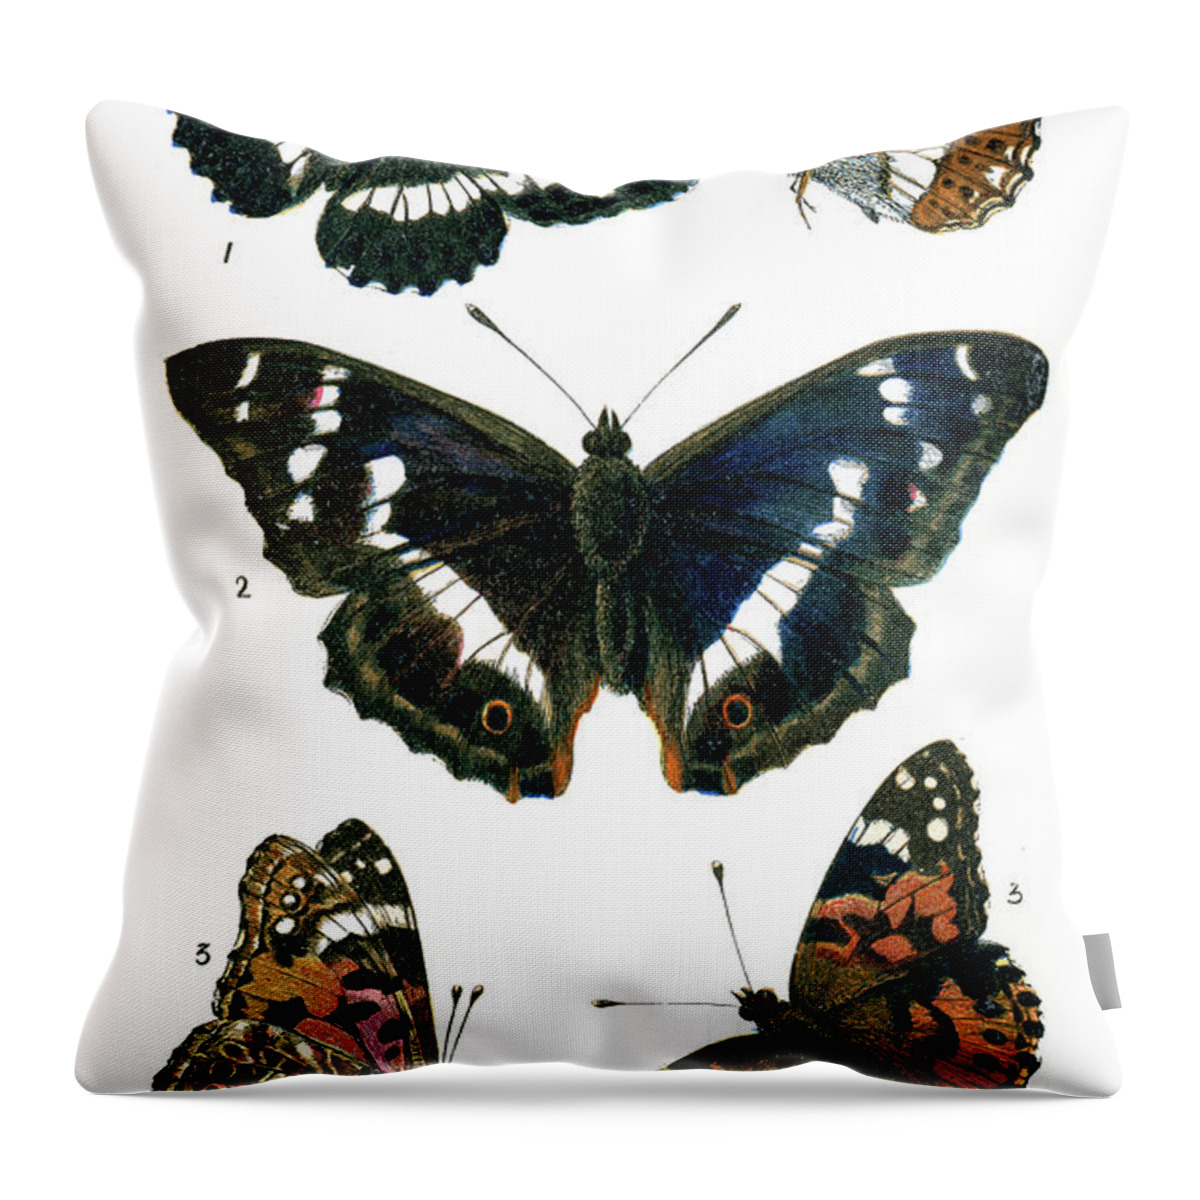 Admiral Butterfly Throw Pillow featuring the digital art Butterflies #9 by Duncan1890